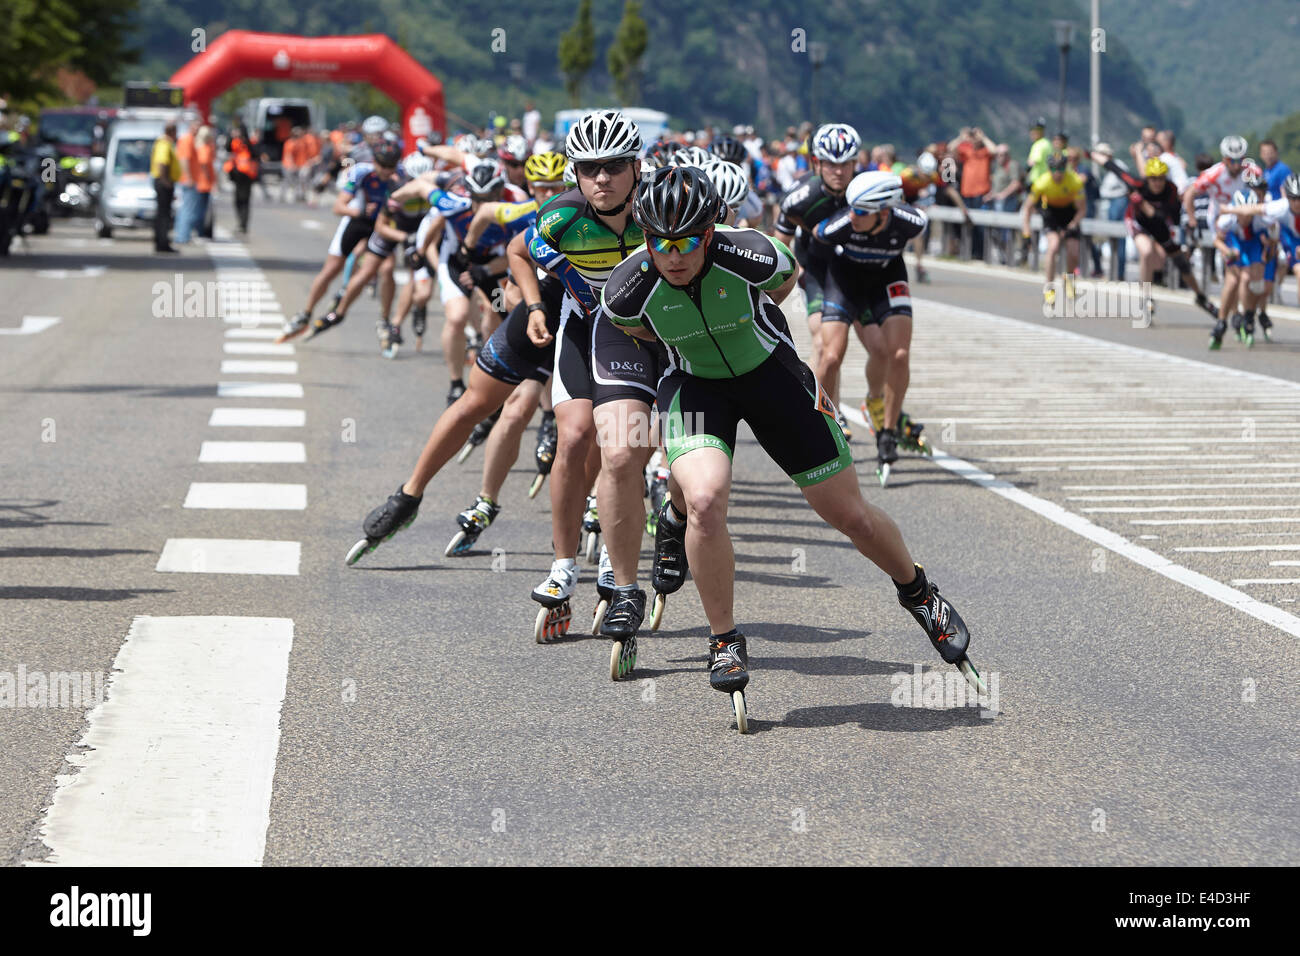 Patinaje de Velocidad, Rin Medio Maratón 2014, Koblenz, Renania-Palatinado, Alemania Foto de stock